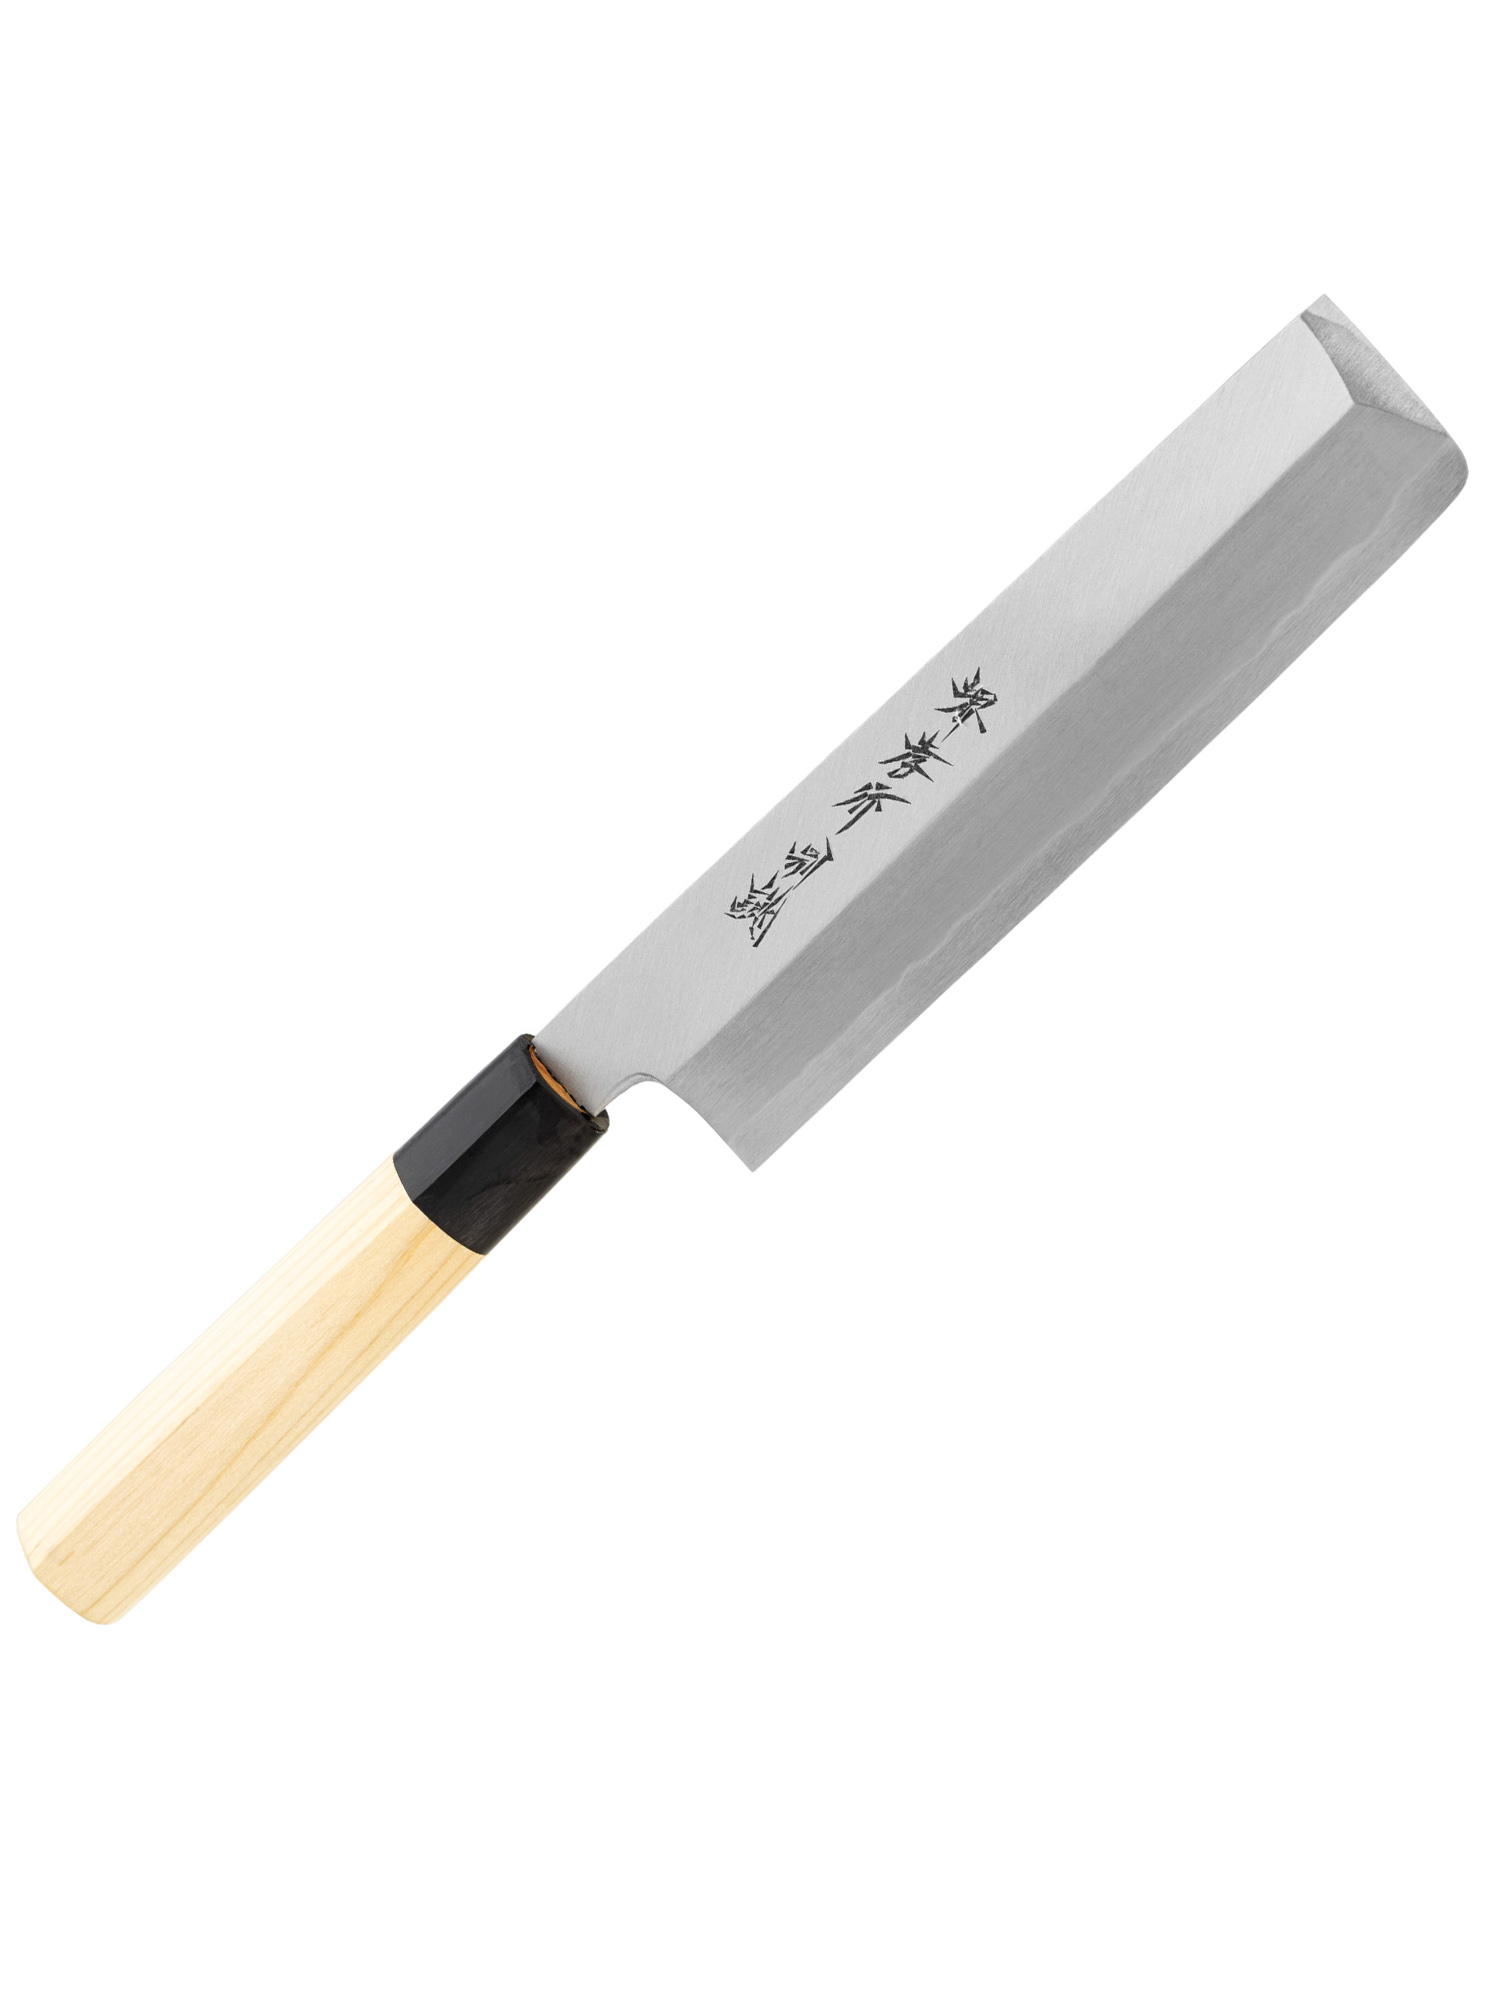 Sakai Takayuki deba einzelne Fase Tokojou Weißer Stahl japanische Küchenmesser usuba 180mm